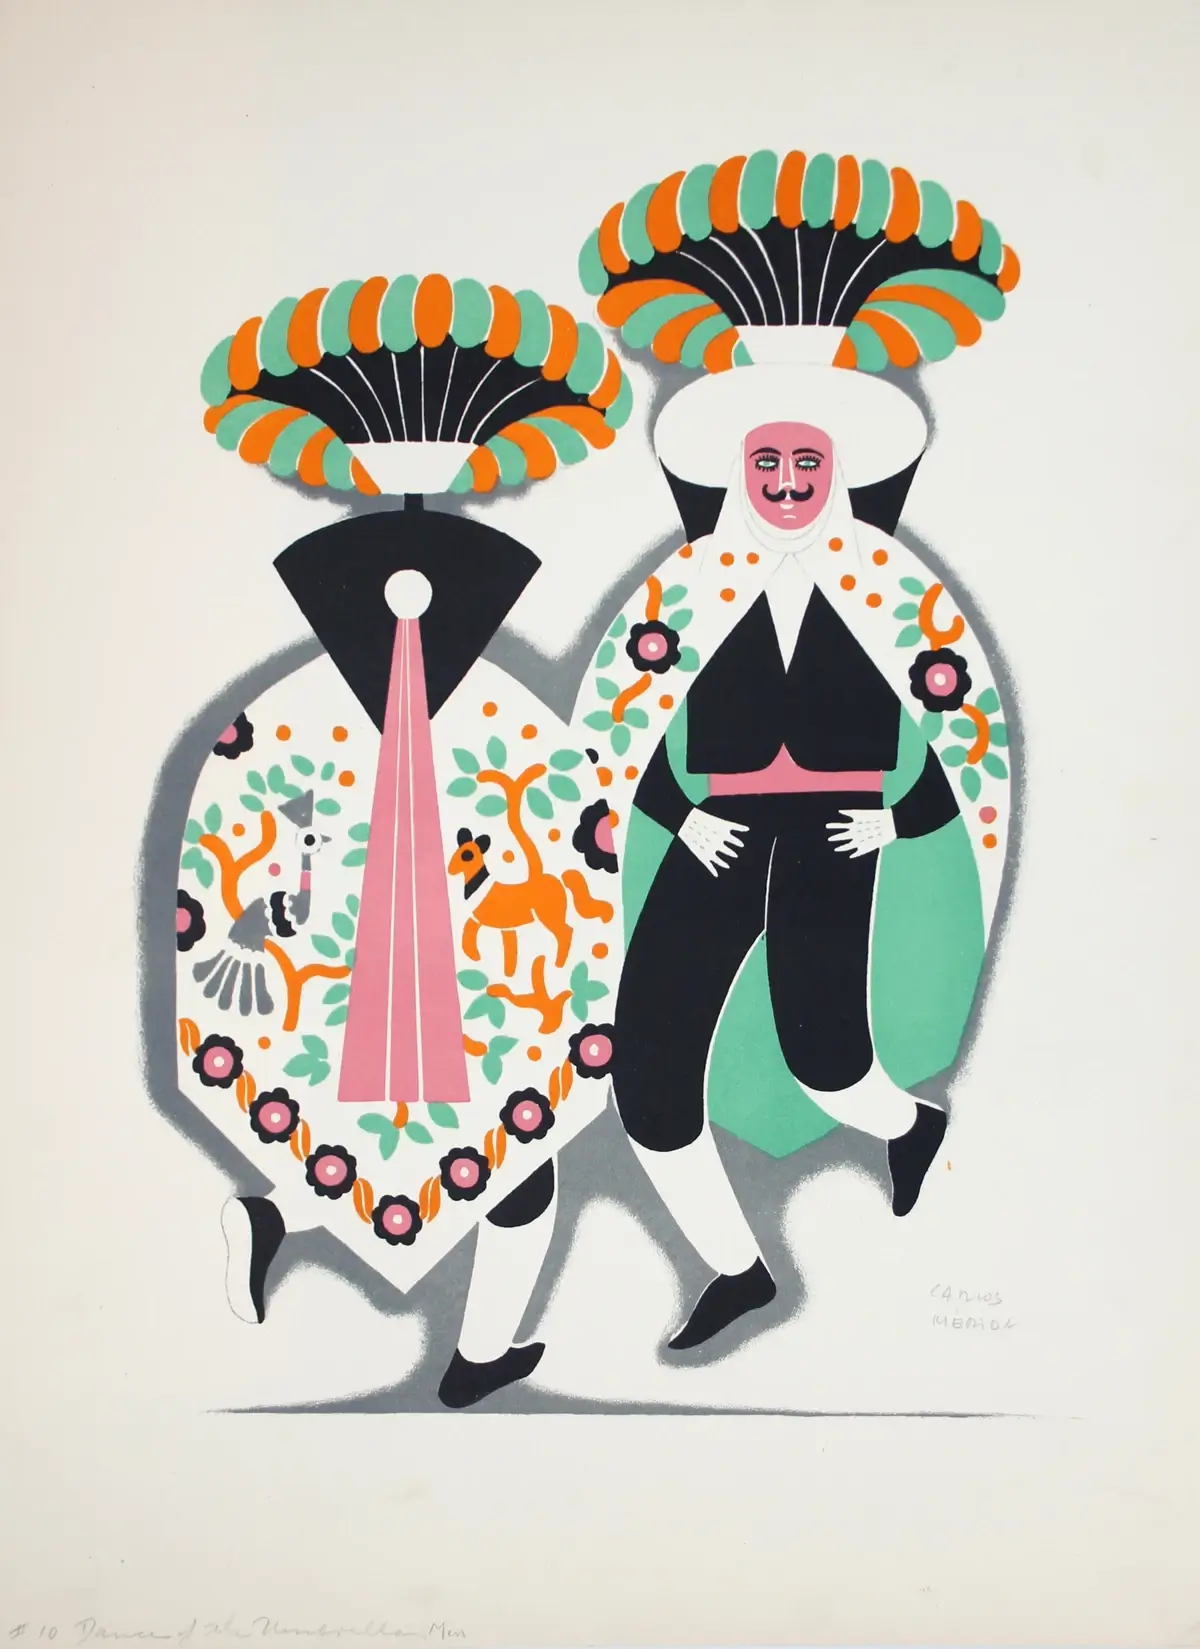 Carlos Mérida, "Dances of Mexico", 1939